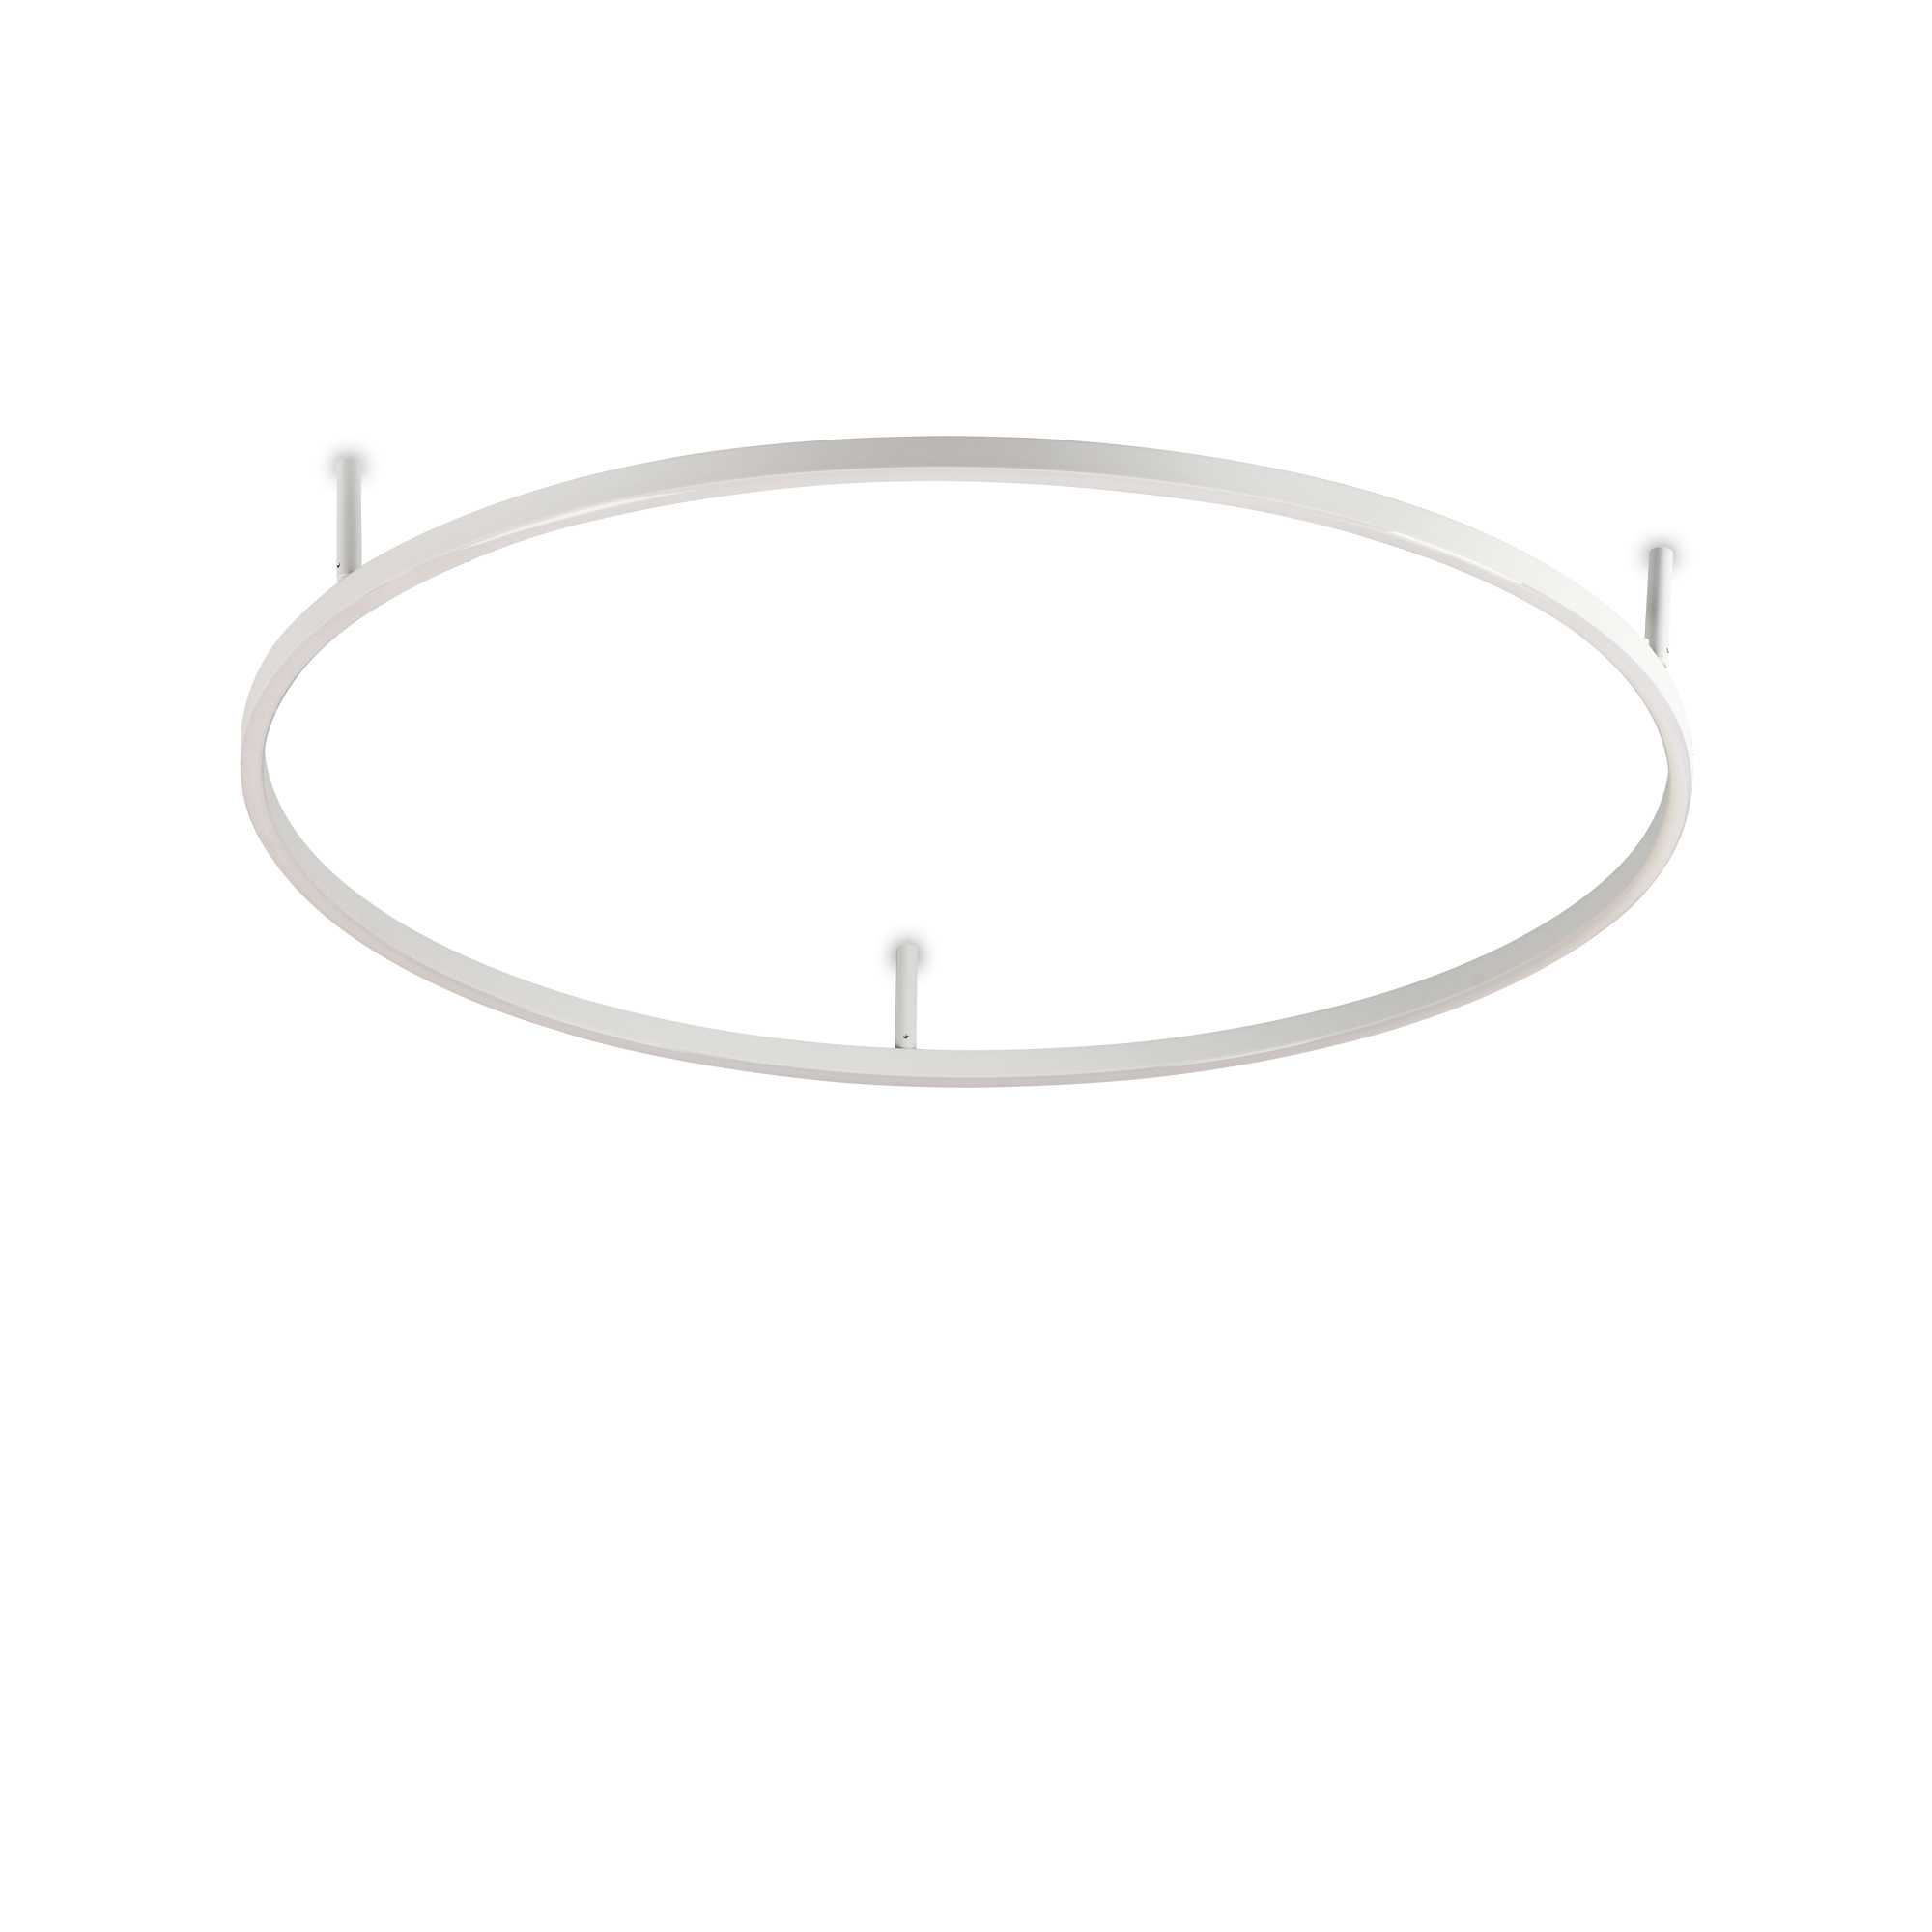 AD hotelska oprema Stropne lampe Oracle slim  duljina 900 mm - Bijele boje slika proizvoda